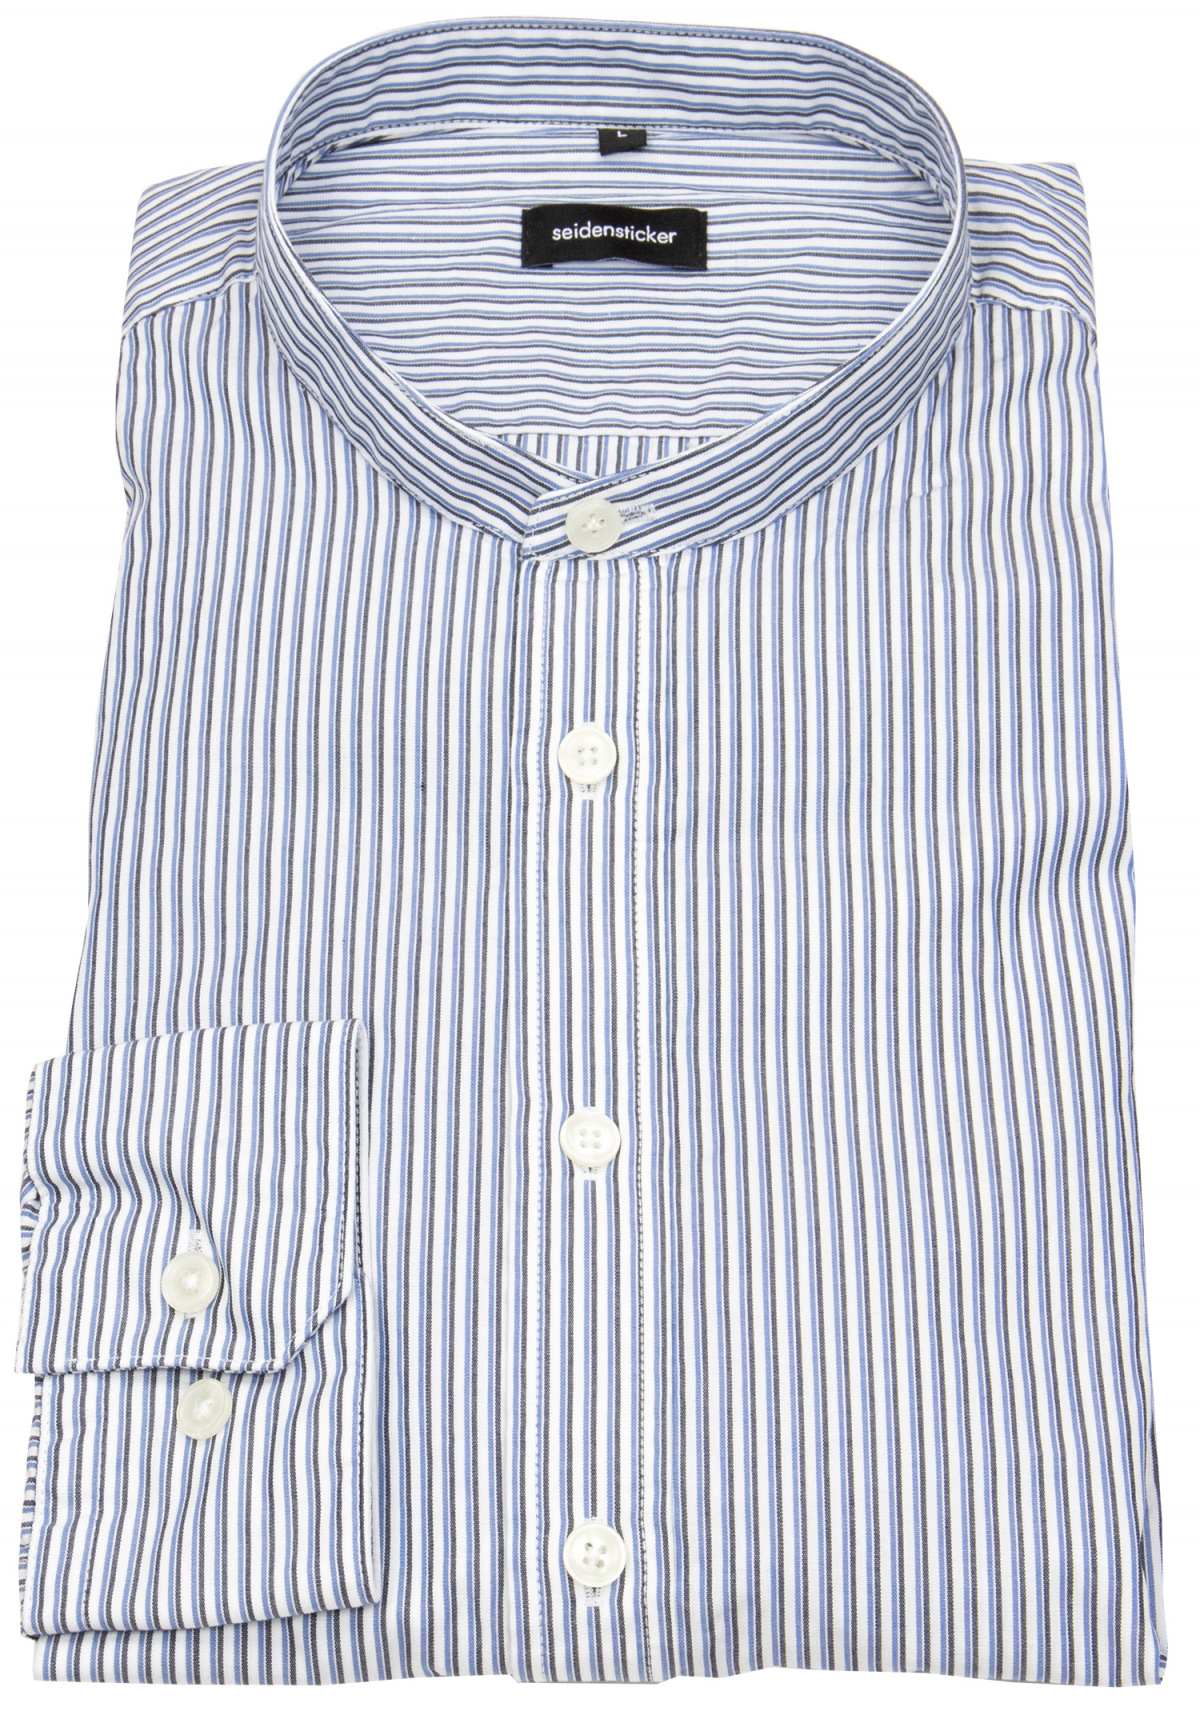 Seidensticker Hemd - Regular Fit - Stehkragen - gestreift - blau / grau /  weiß